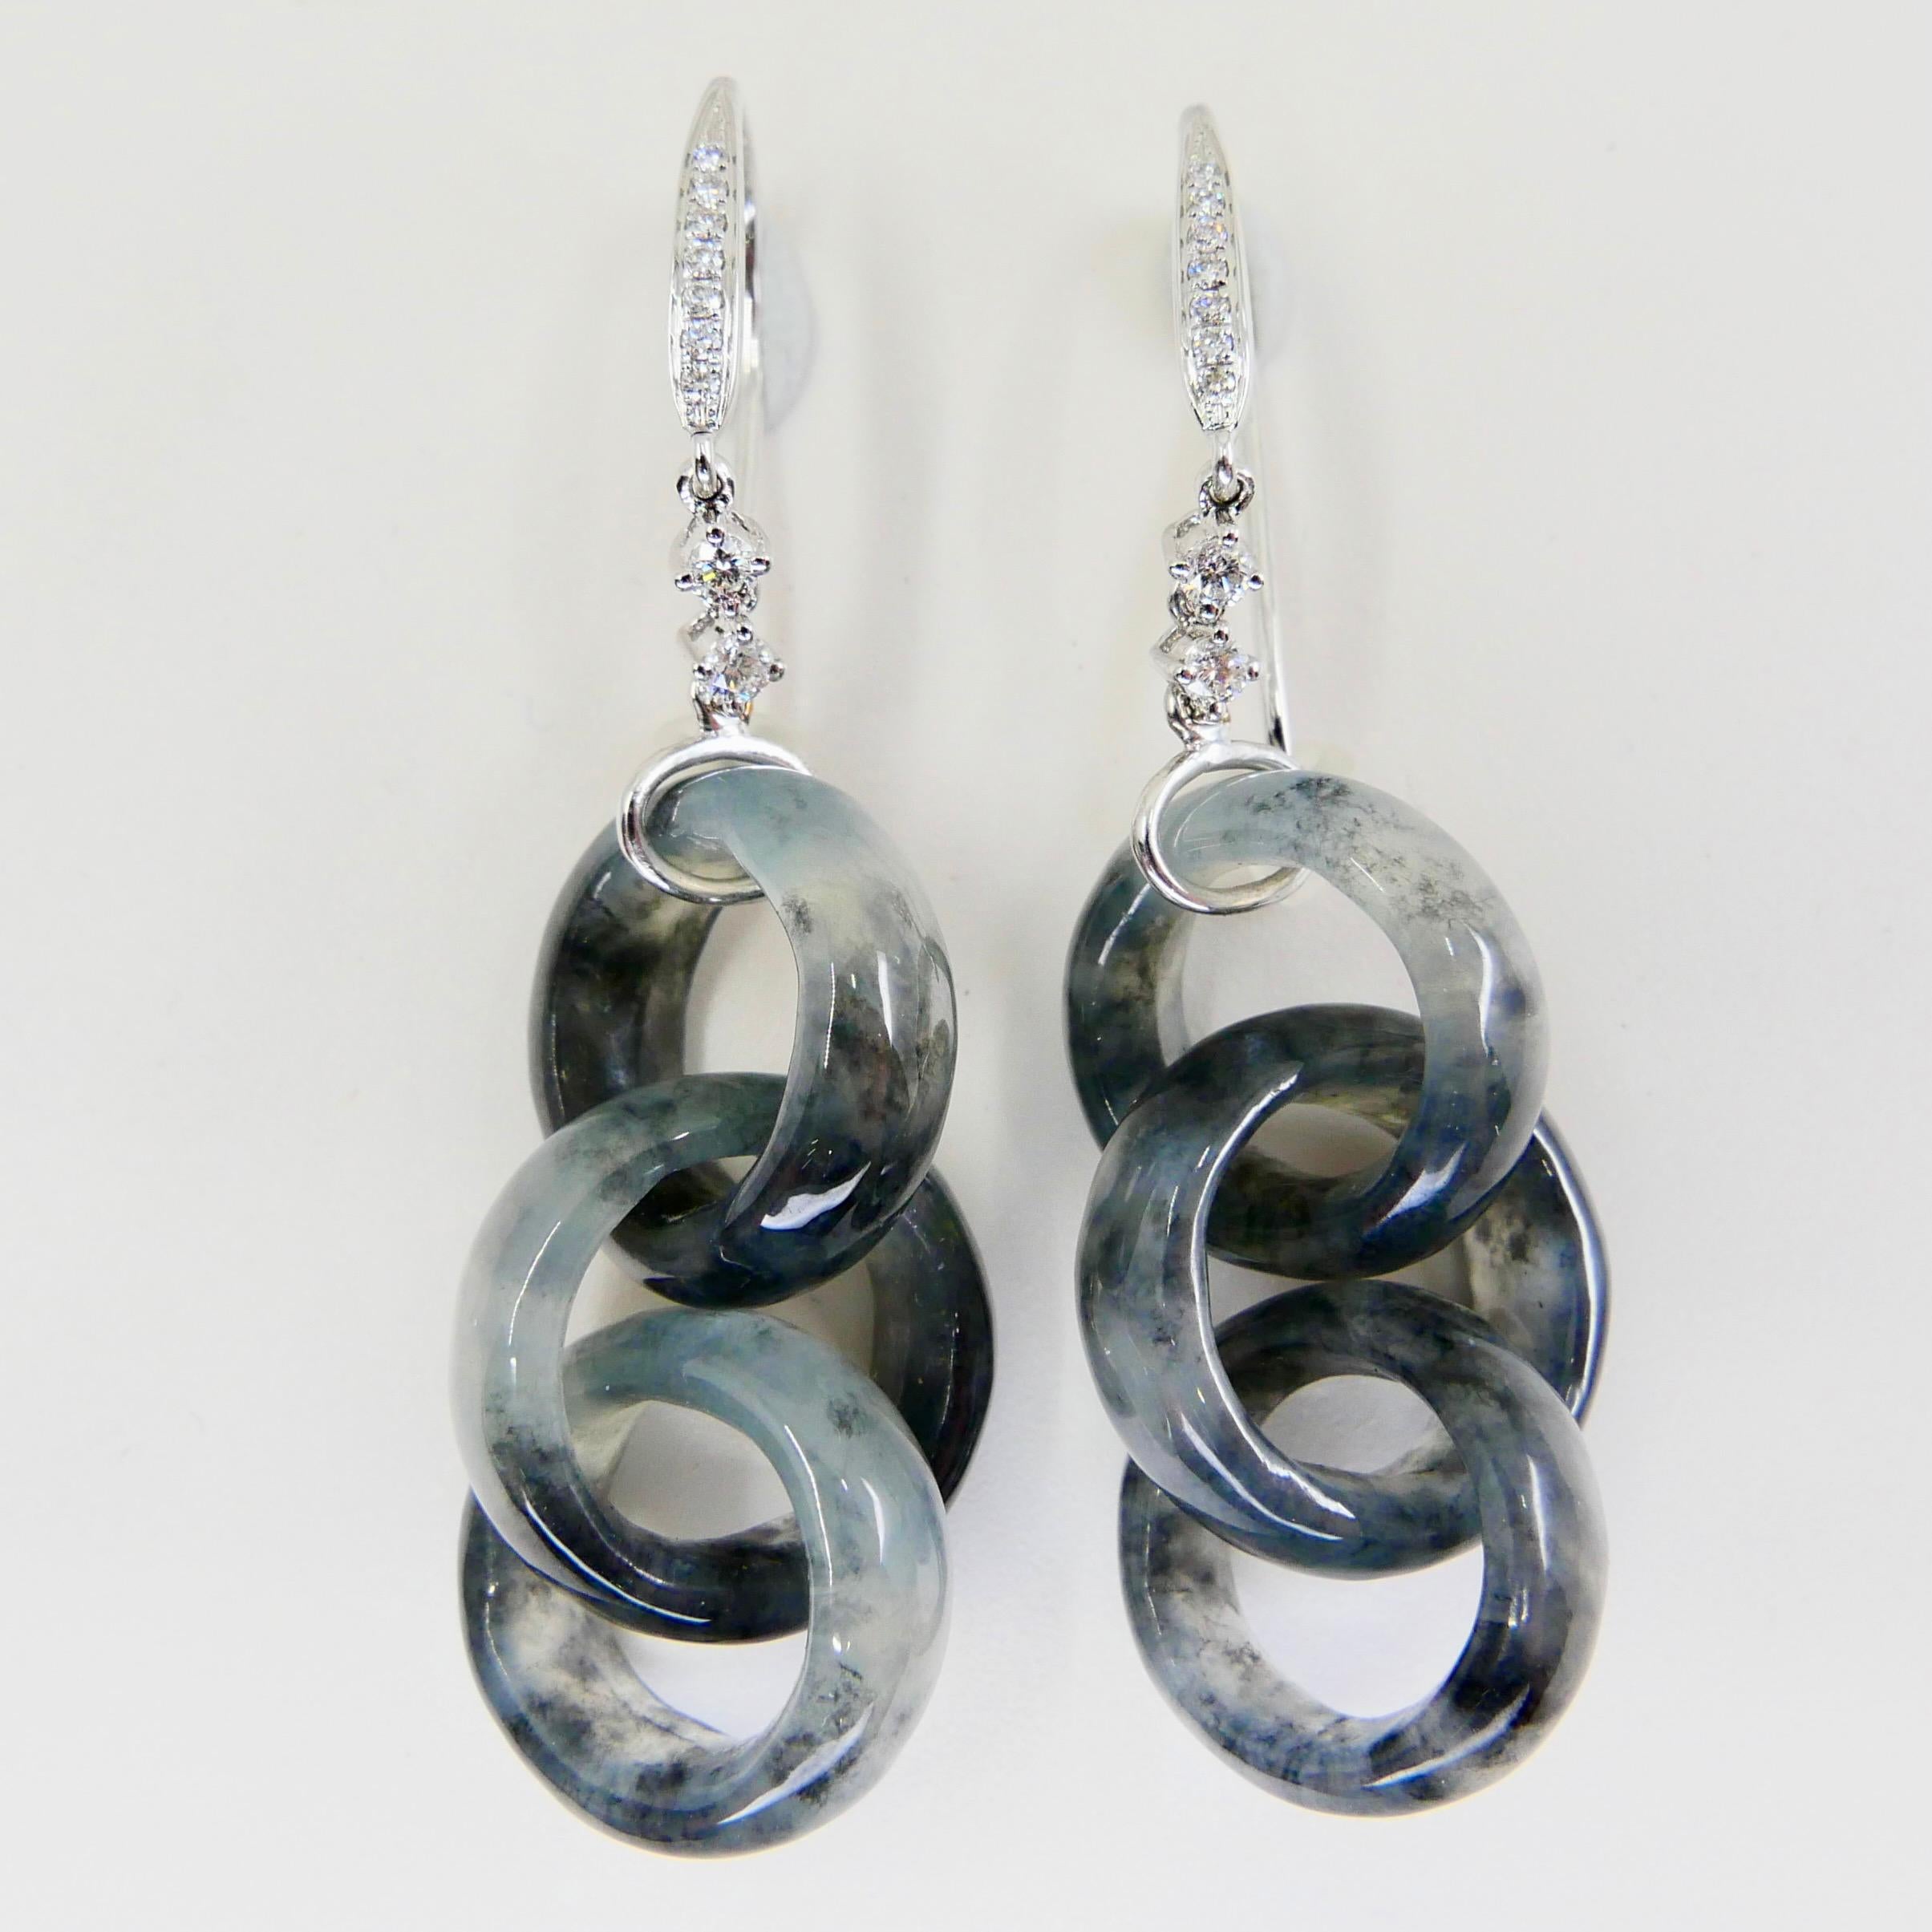 Certified Icy Black Jadeite Jade & Diamond Earrings, Solid Interlocking Links 6